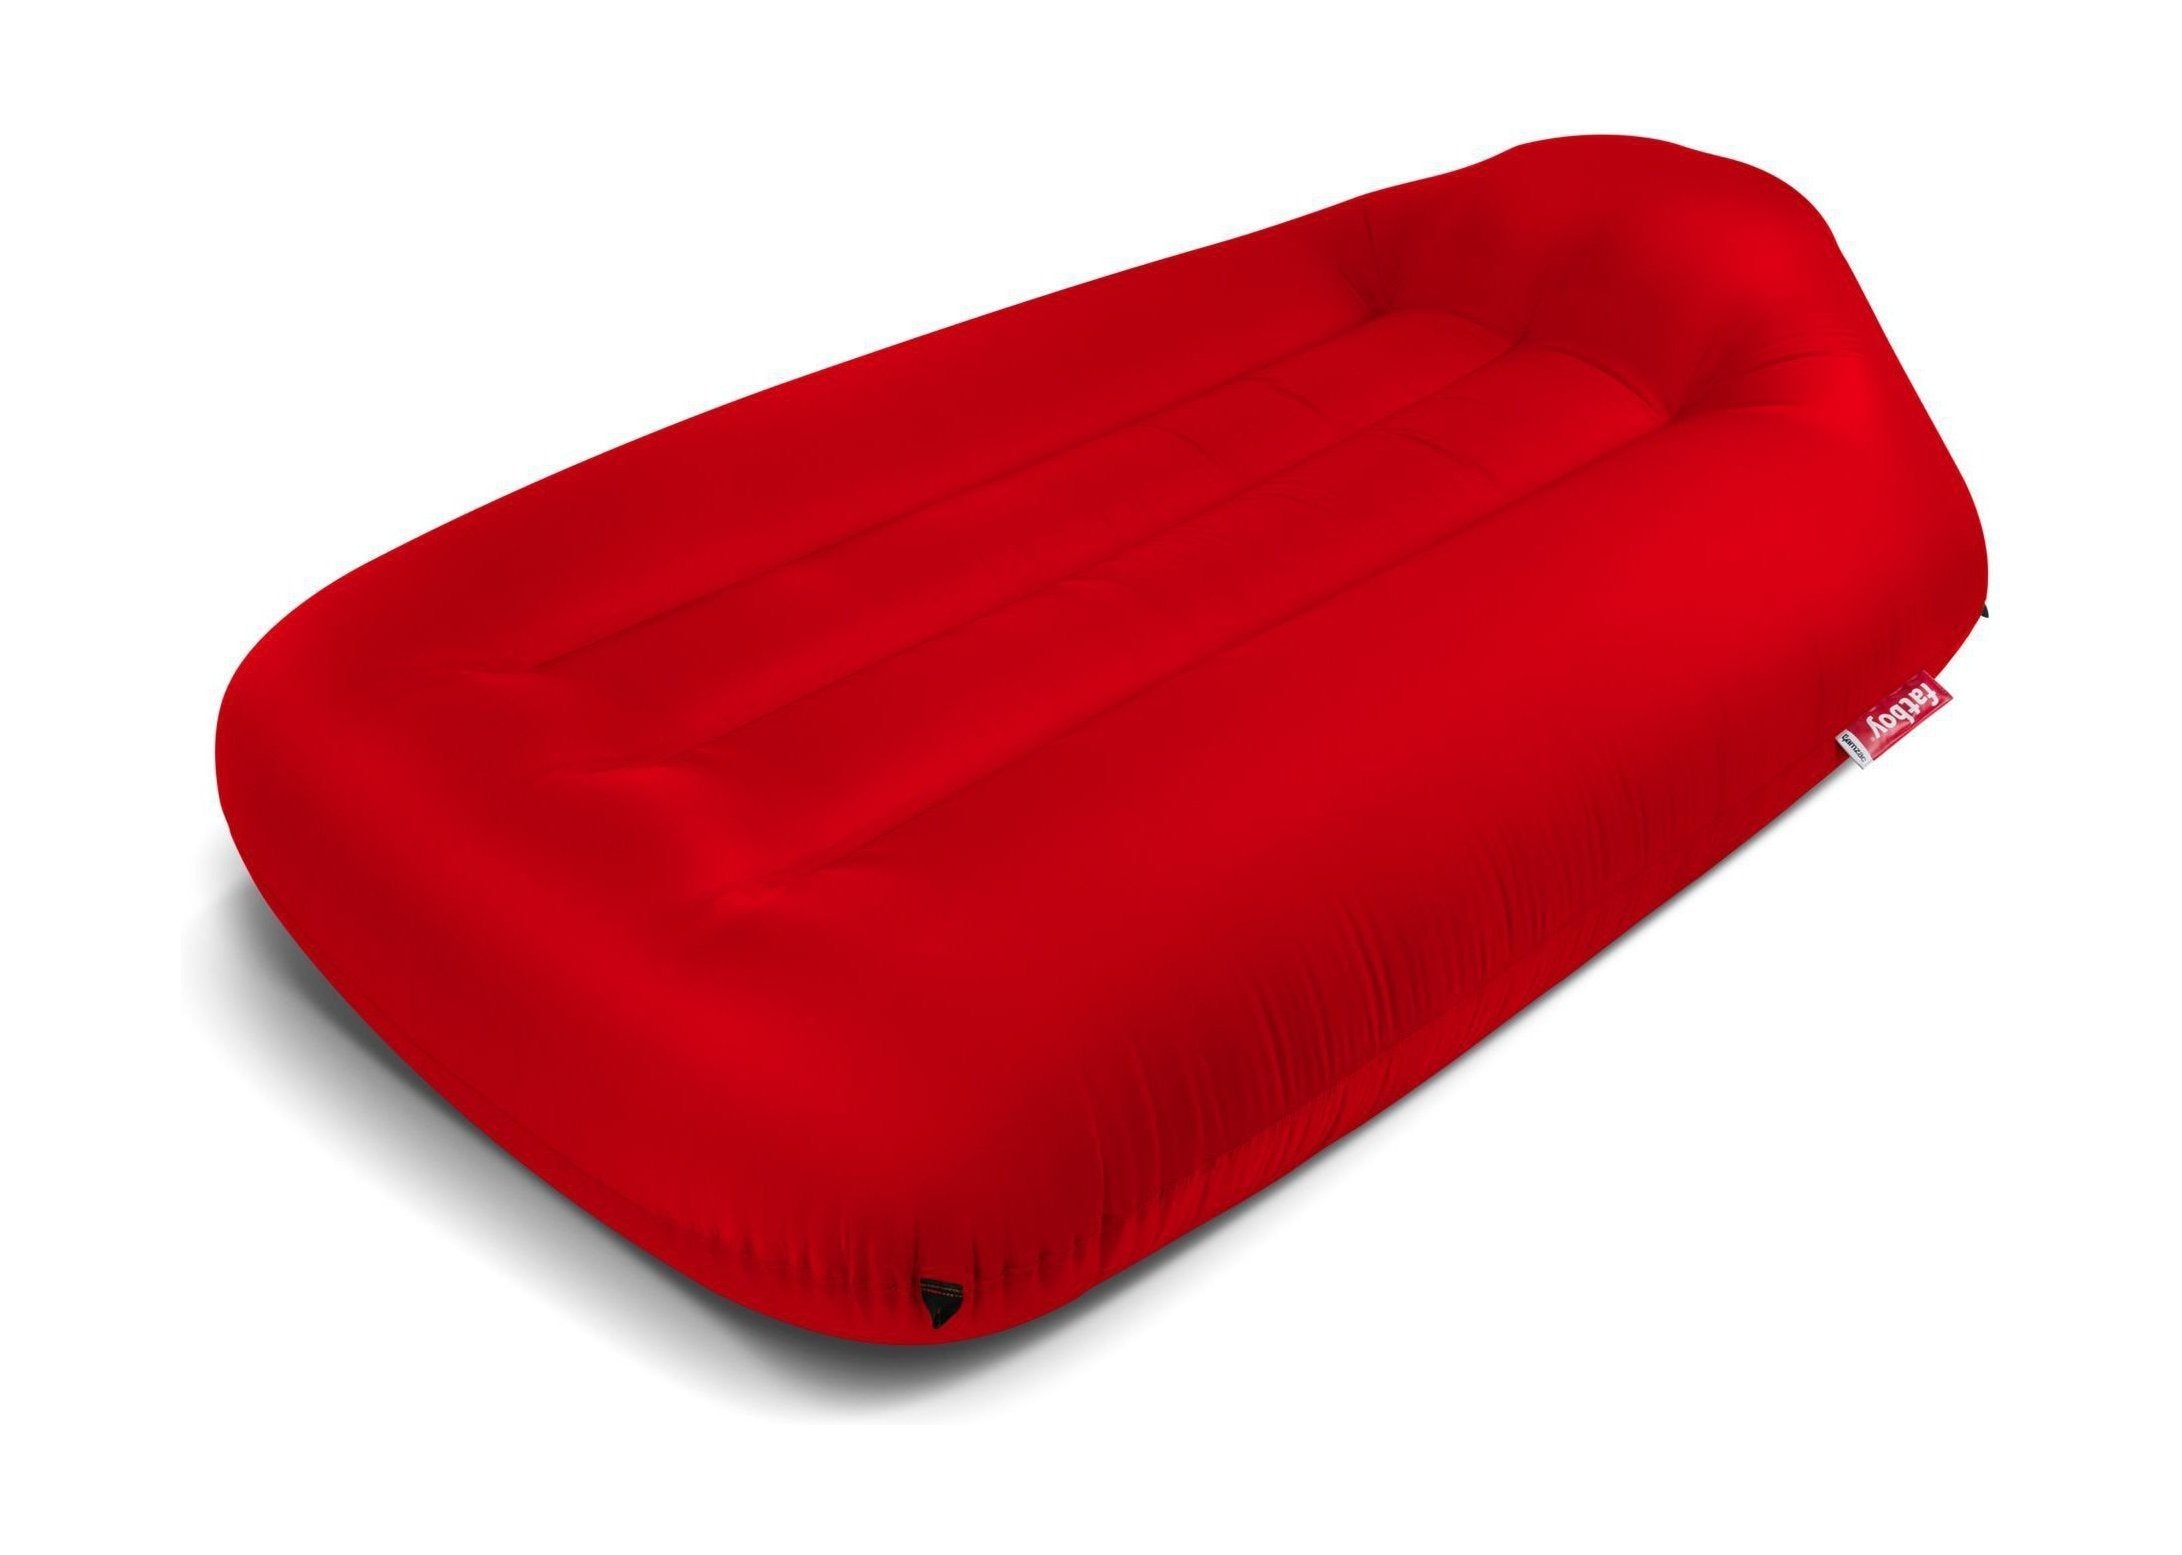 Fatboy Lamzac L divano aria gonfiabile 3.0, rosso